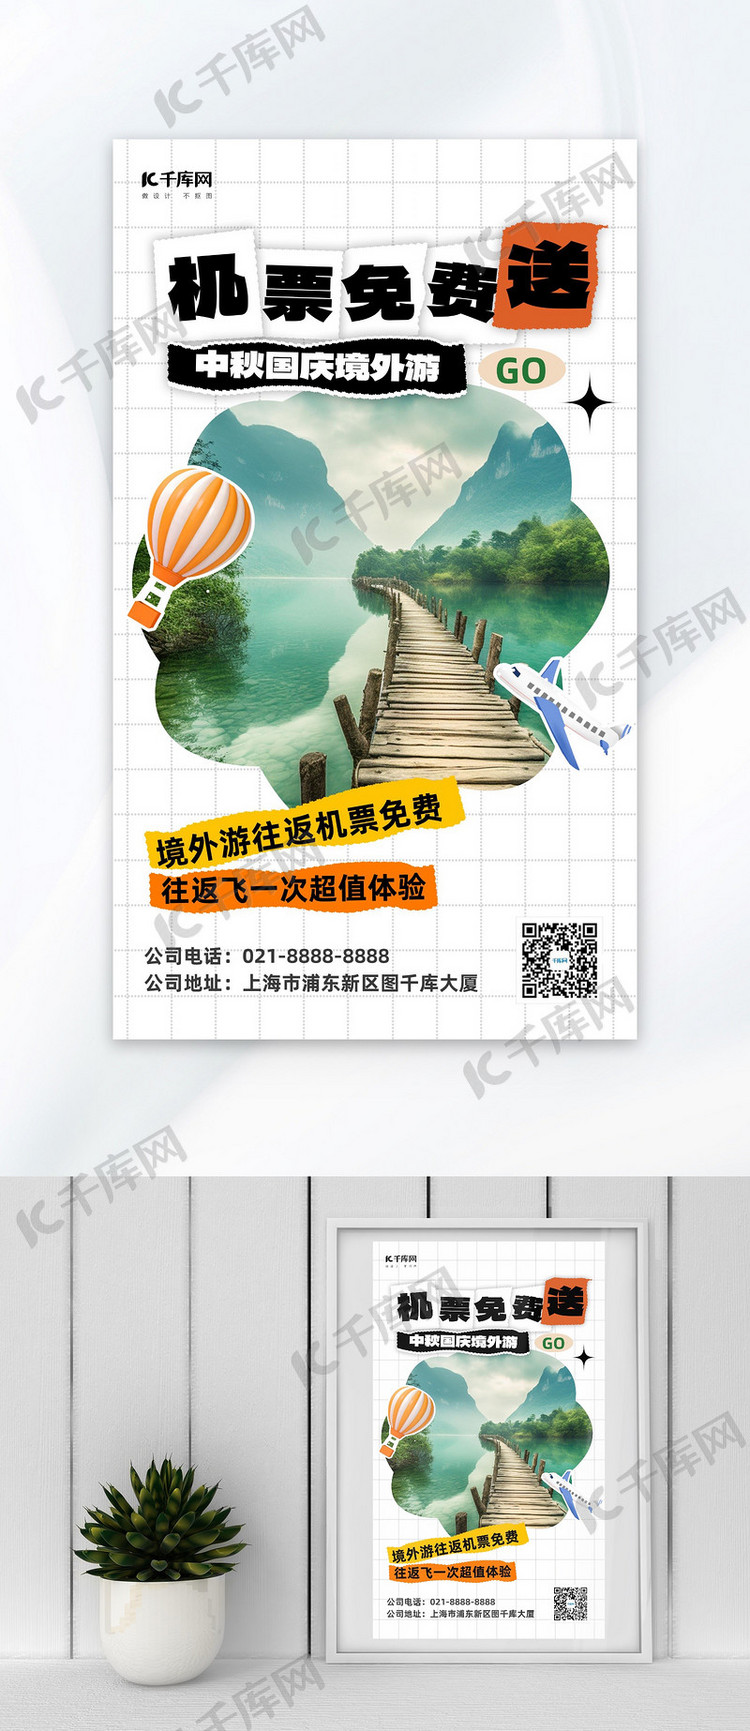 中秋国庆旅游景区绿色小红书风AI海报